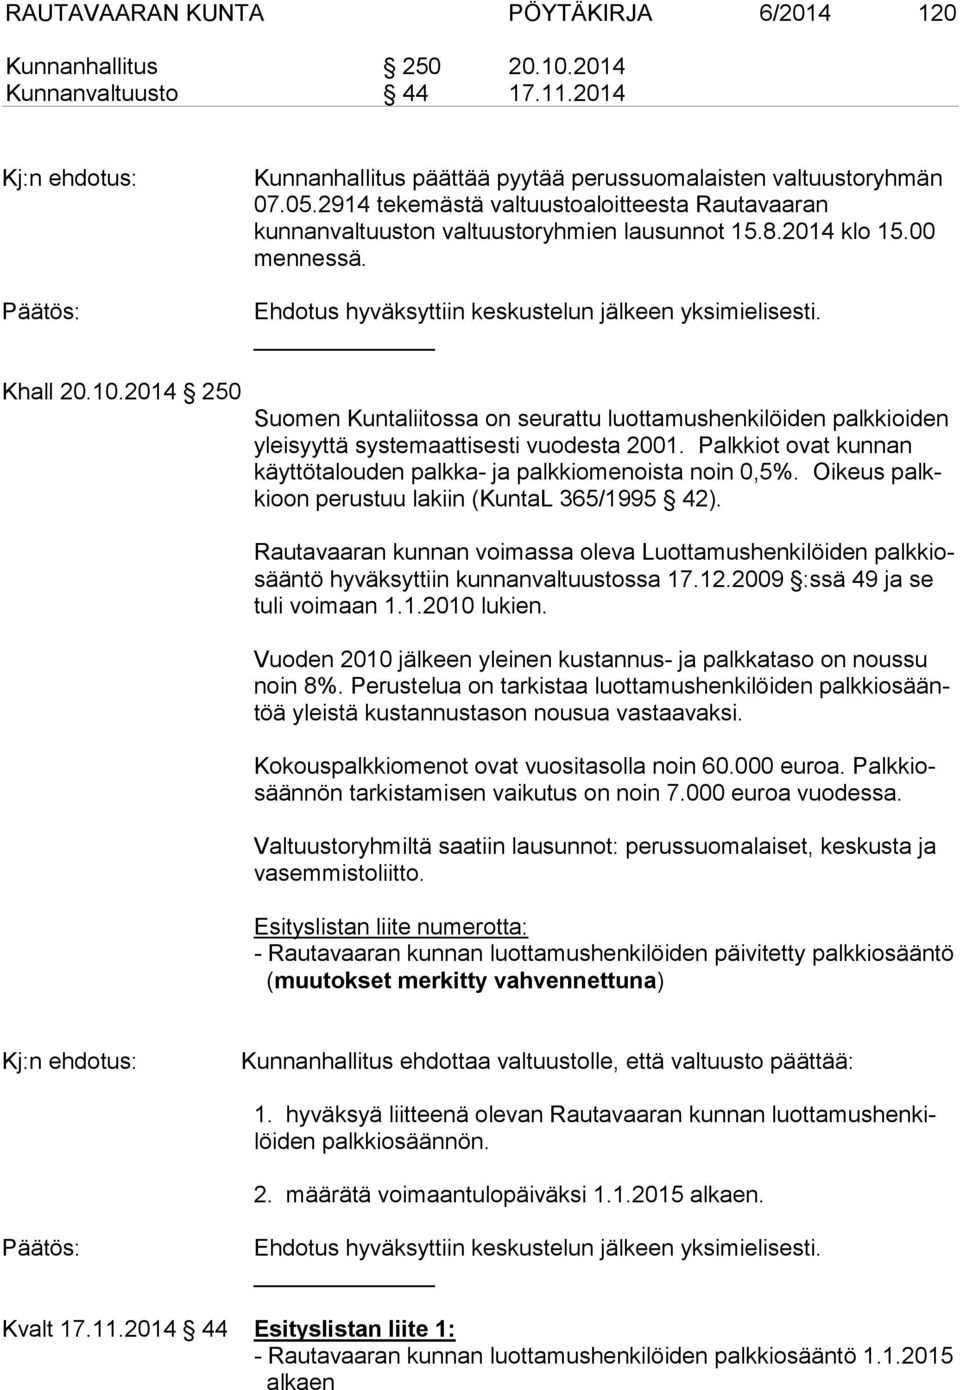 Suomen Kuntaliitossa on seurattu luottamushenkilöiden palkkioiden yleisyyttä systemaattisesti vuodesta 2001. Palkkiot ovat kunnan käyttötalouden palkka- ja palkkiomenoista noin 0,5%.